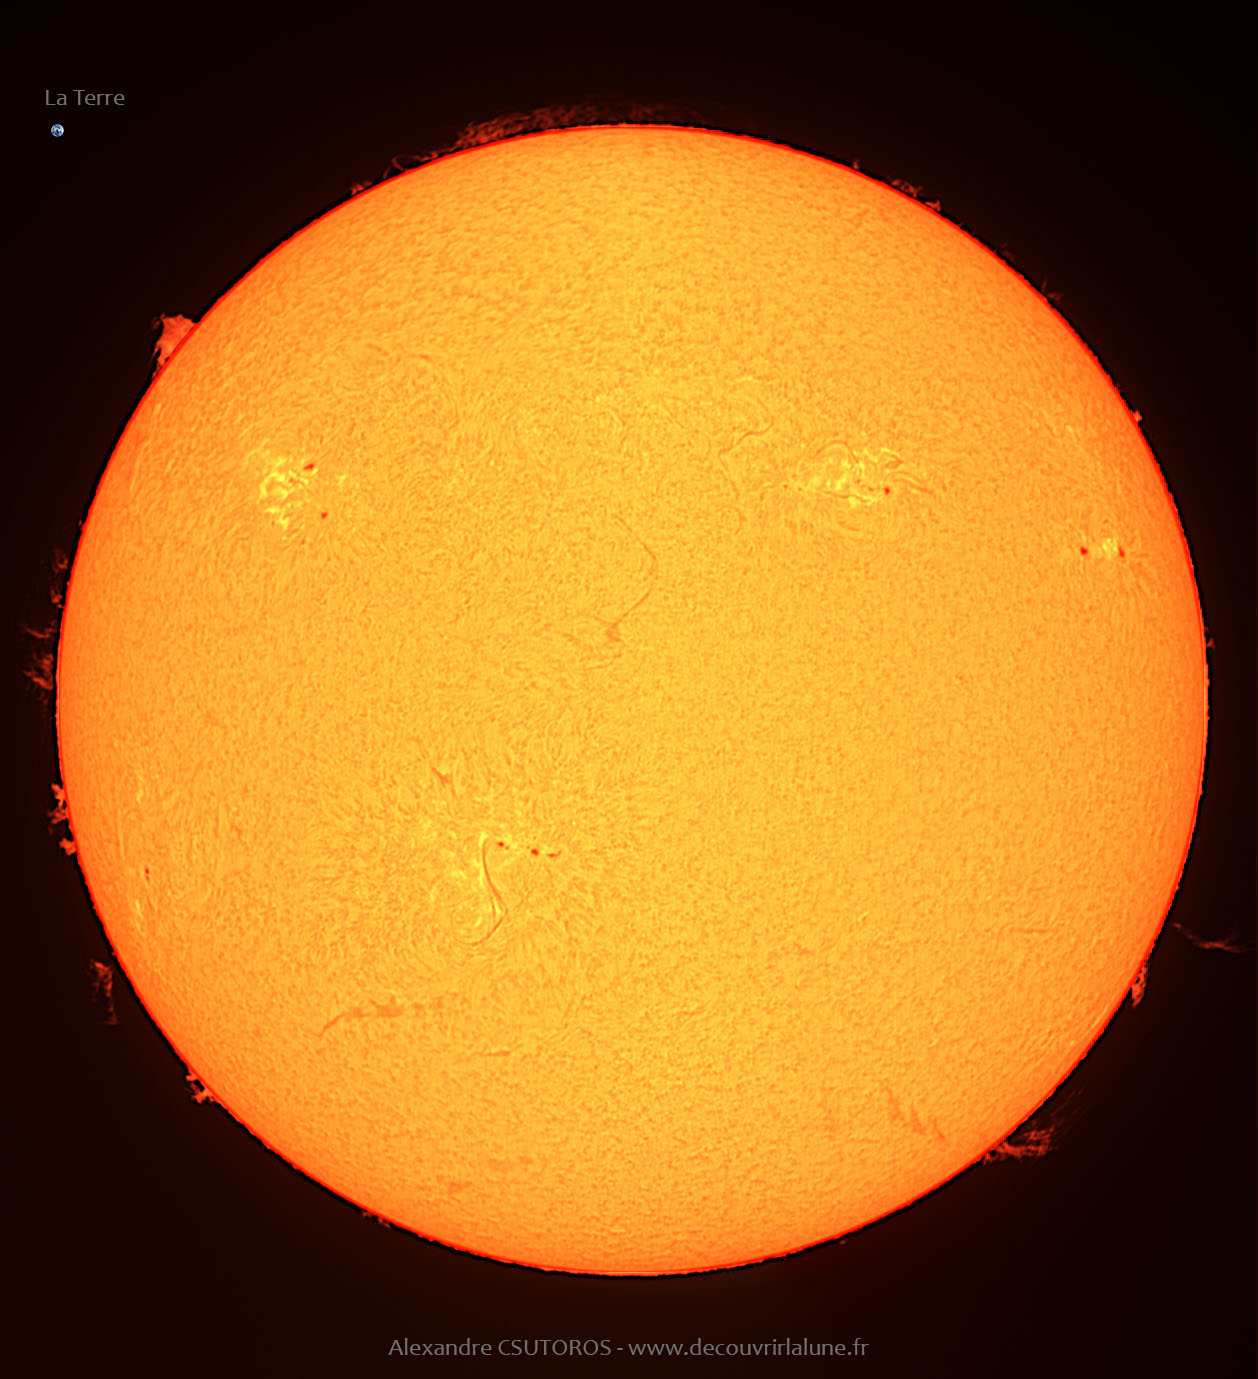 sun-02012022-1-1.jpg